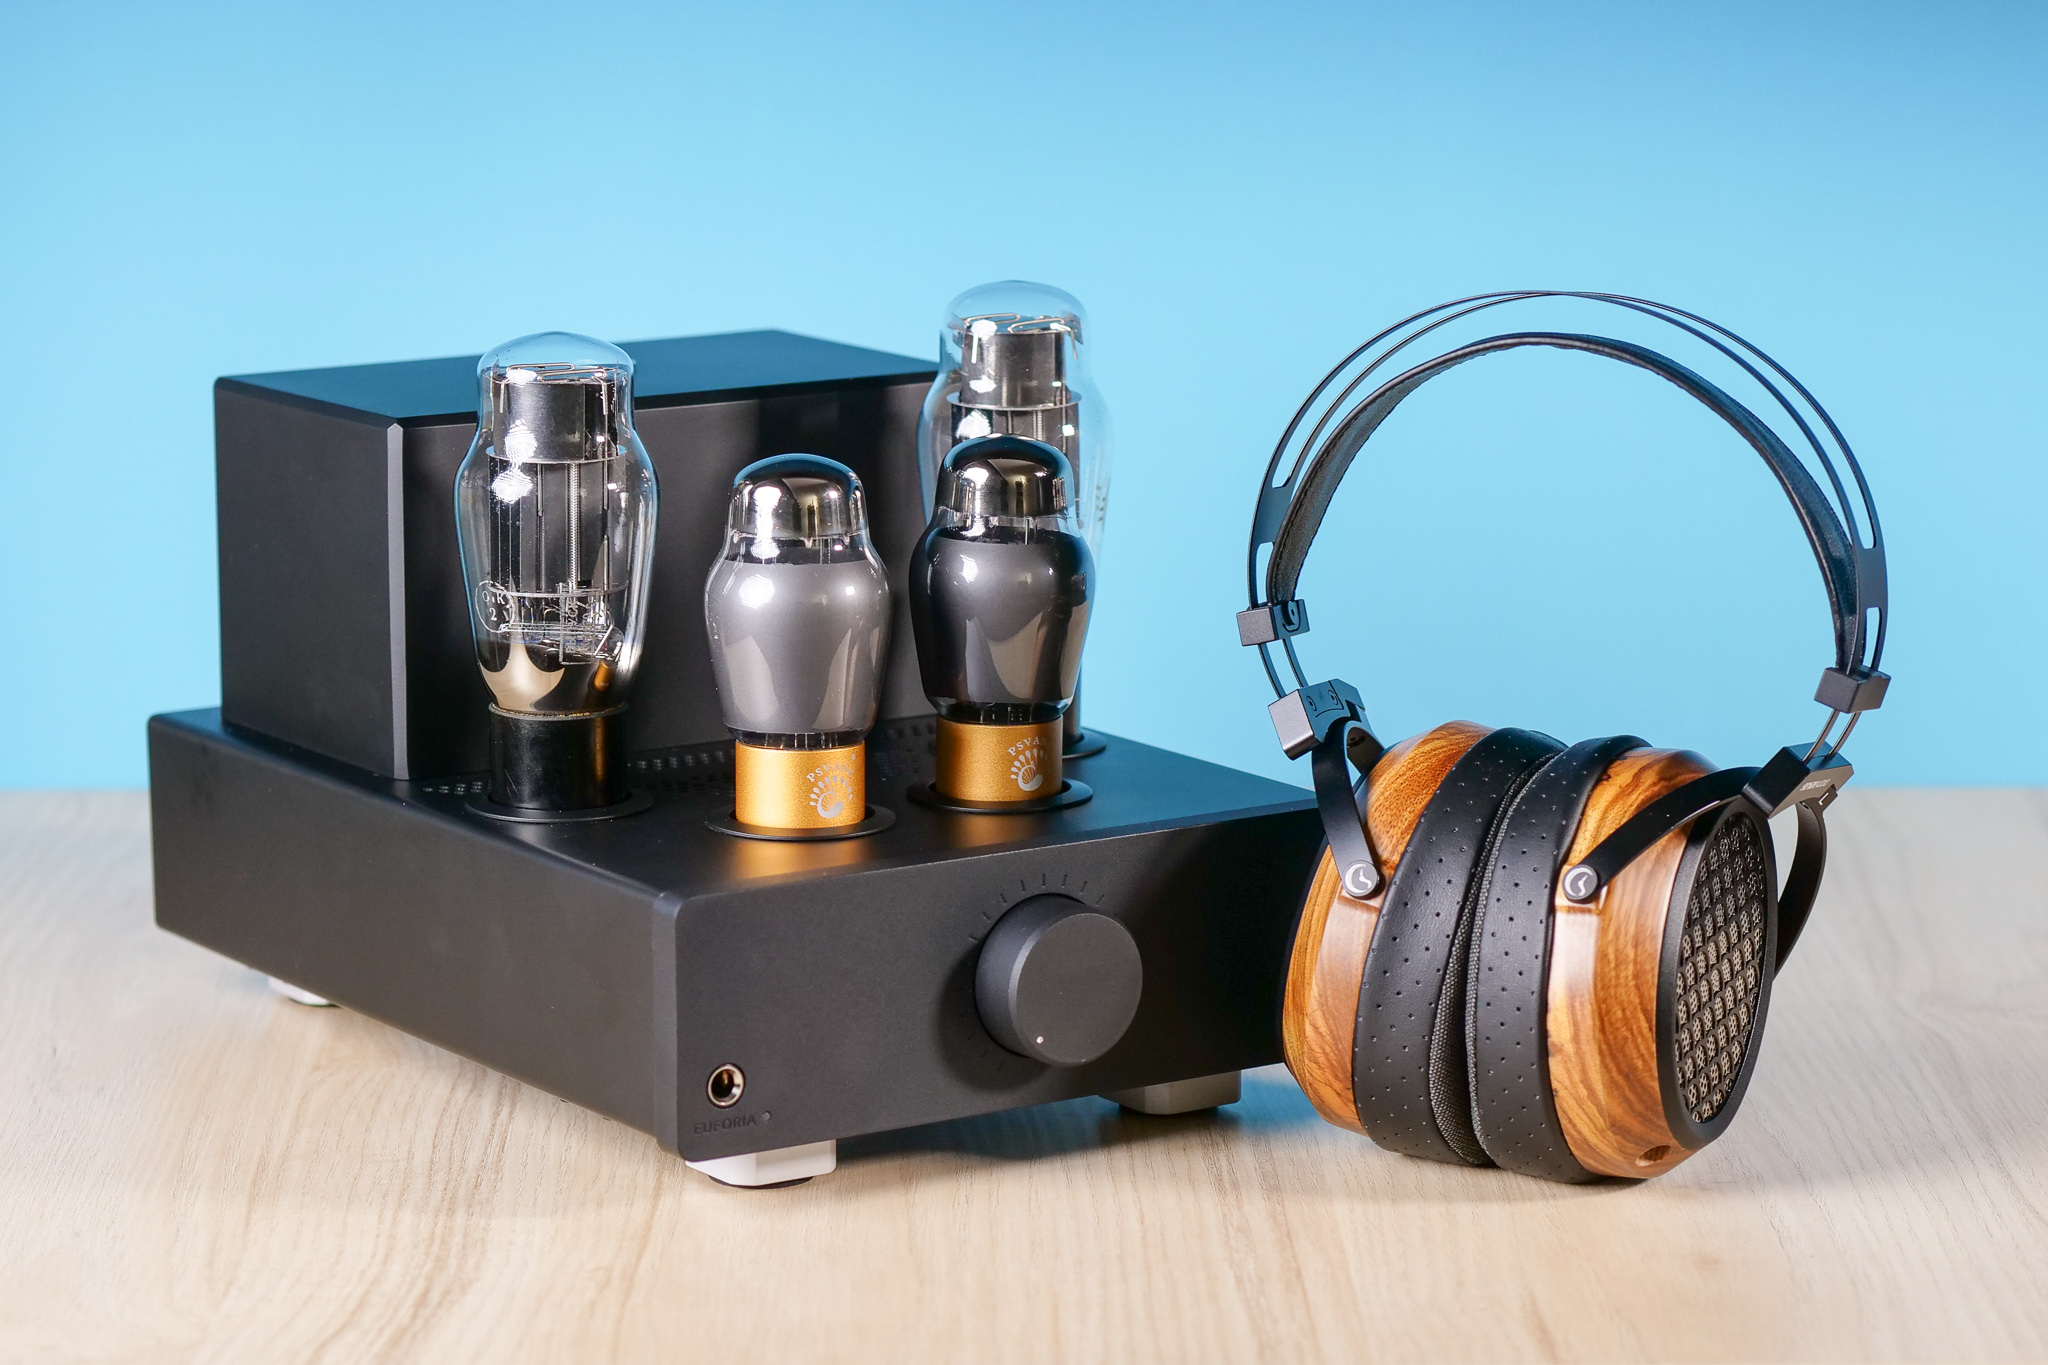 Profitez de la qualité extraordinaire de votre audio avec l'Helix PP40.